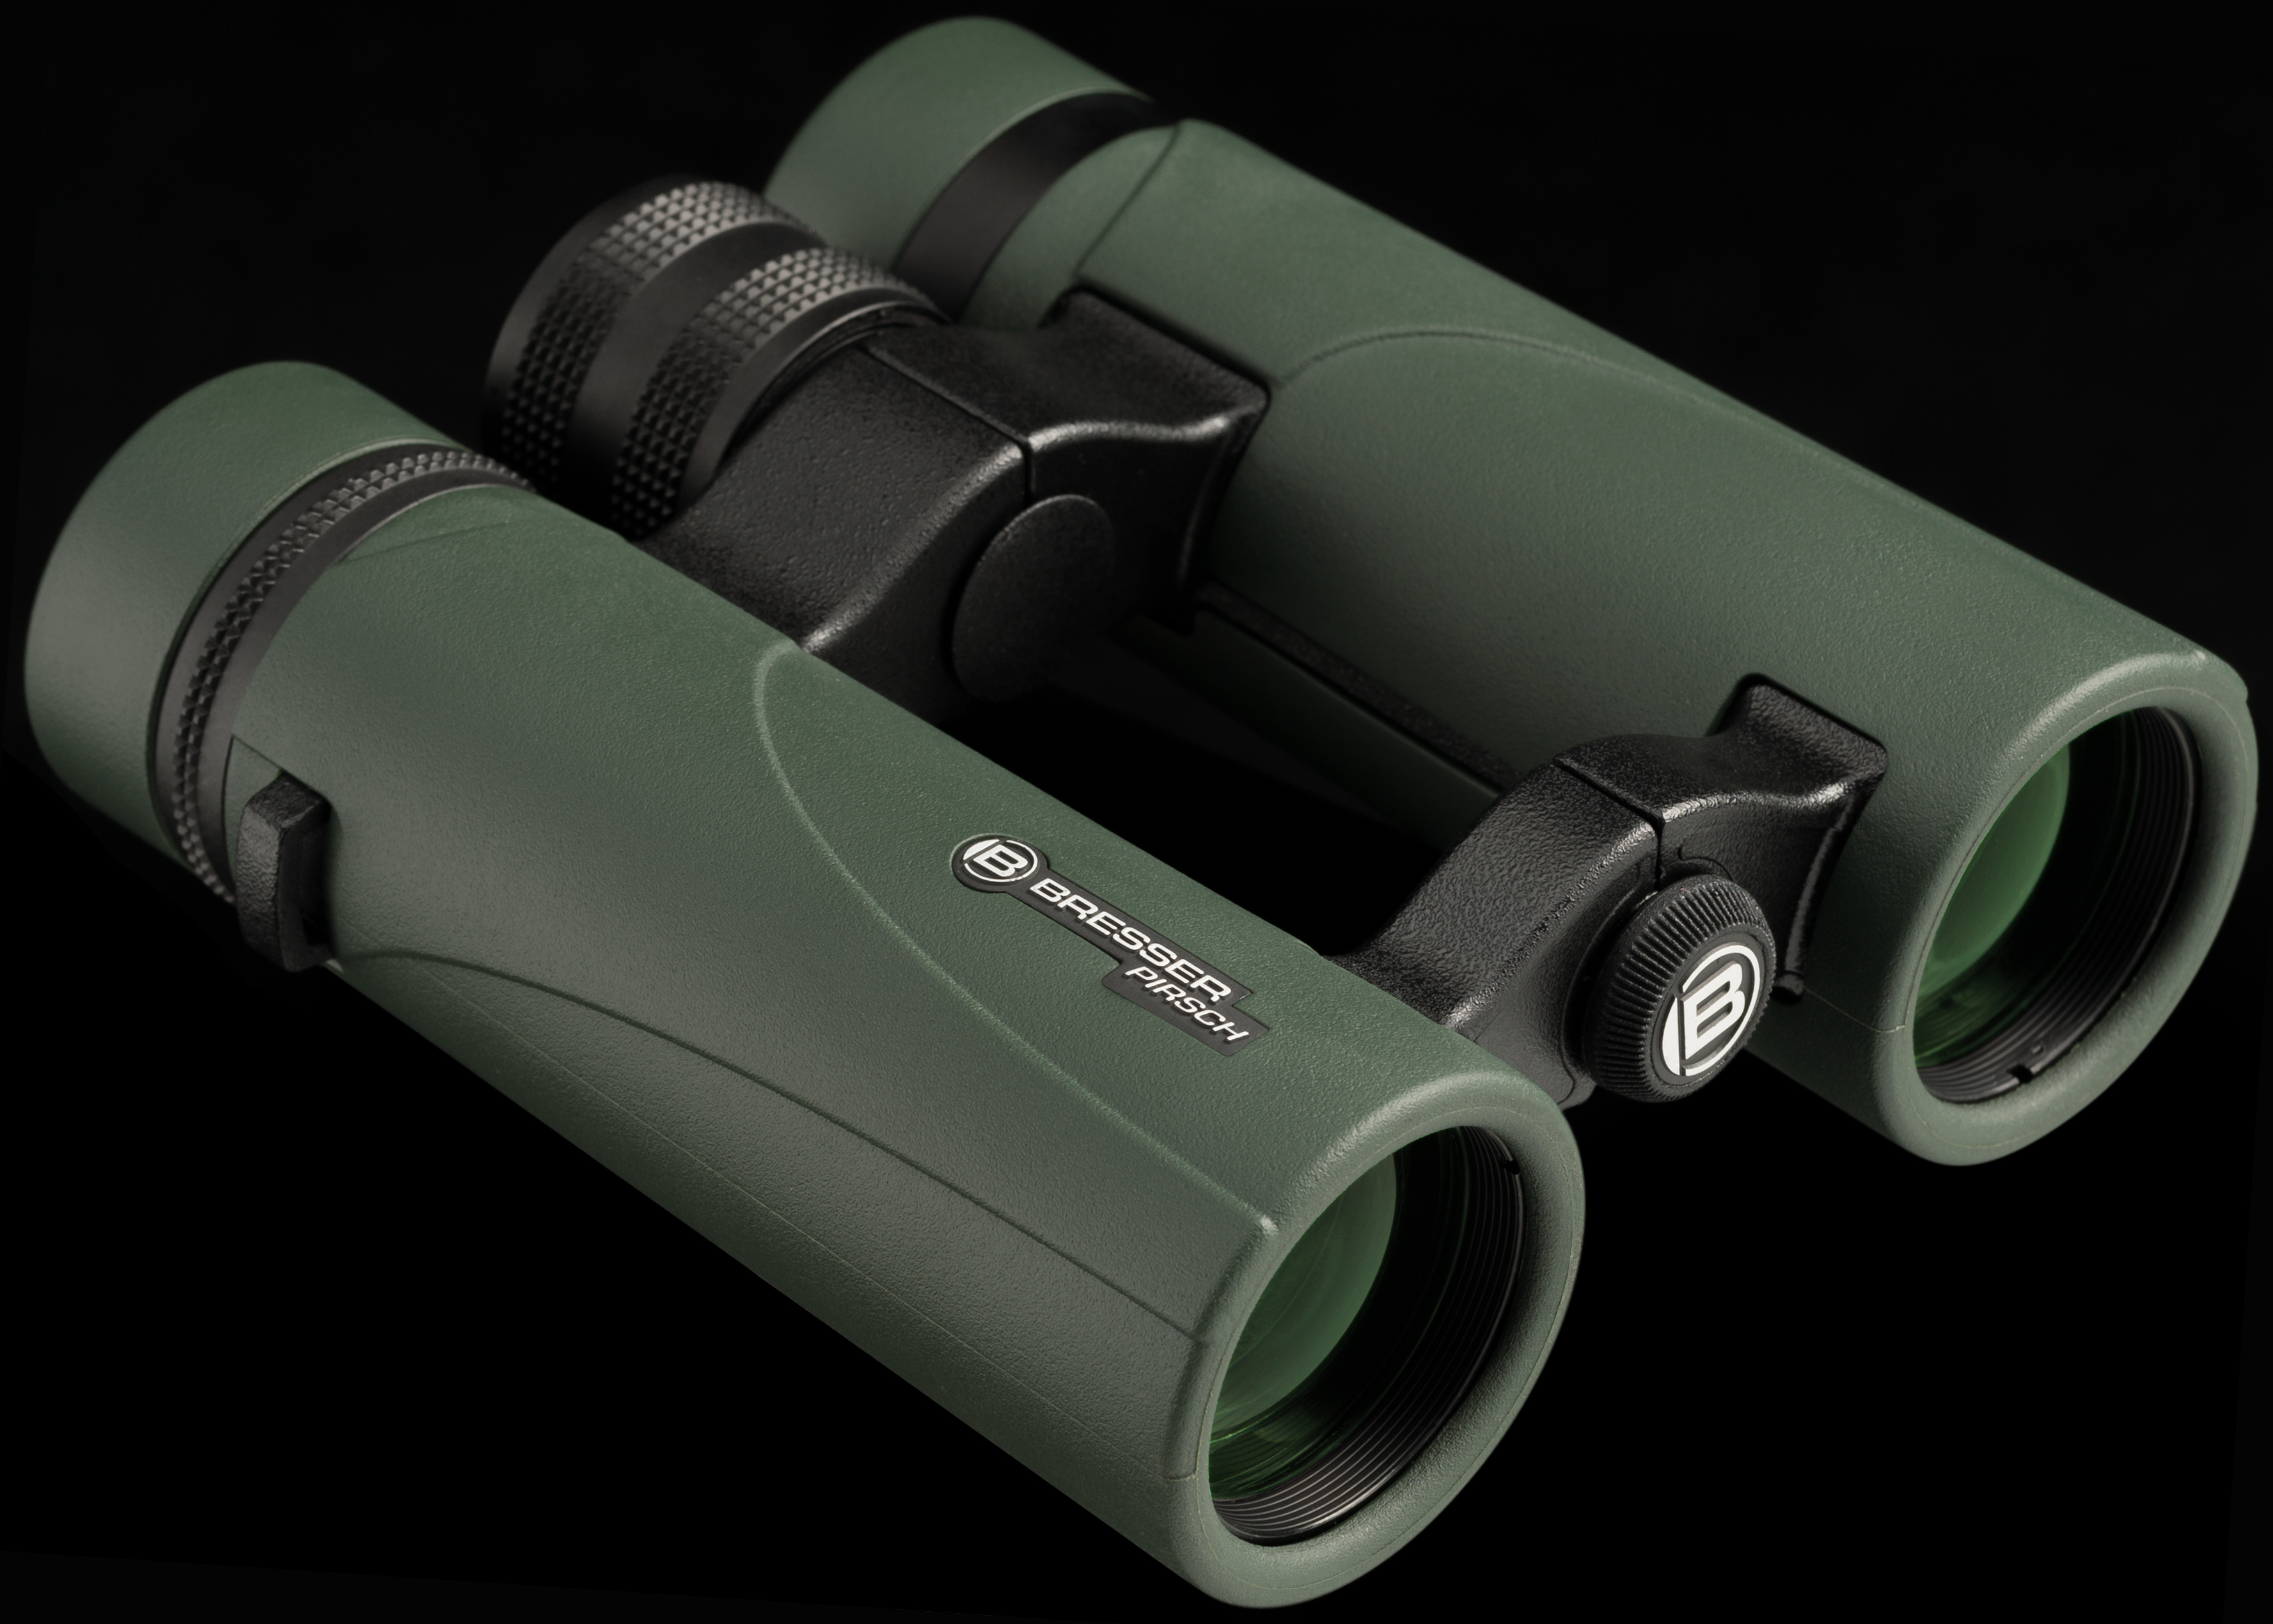 BRESSER Pirsch 10x34 Binoculars Phase Coating